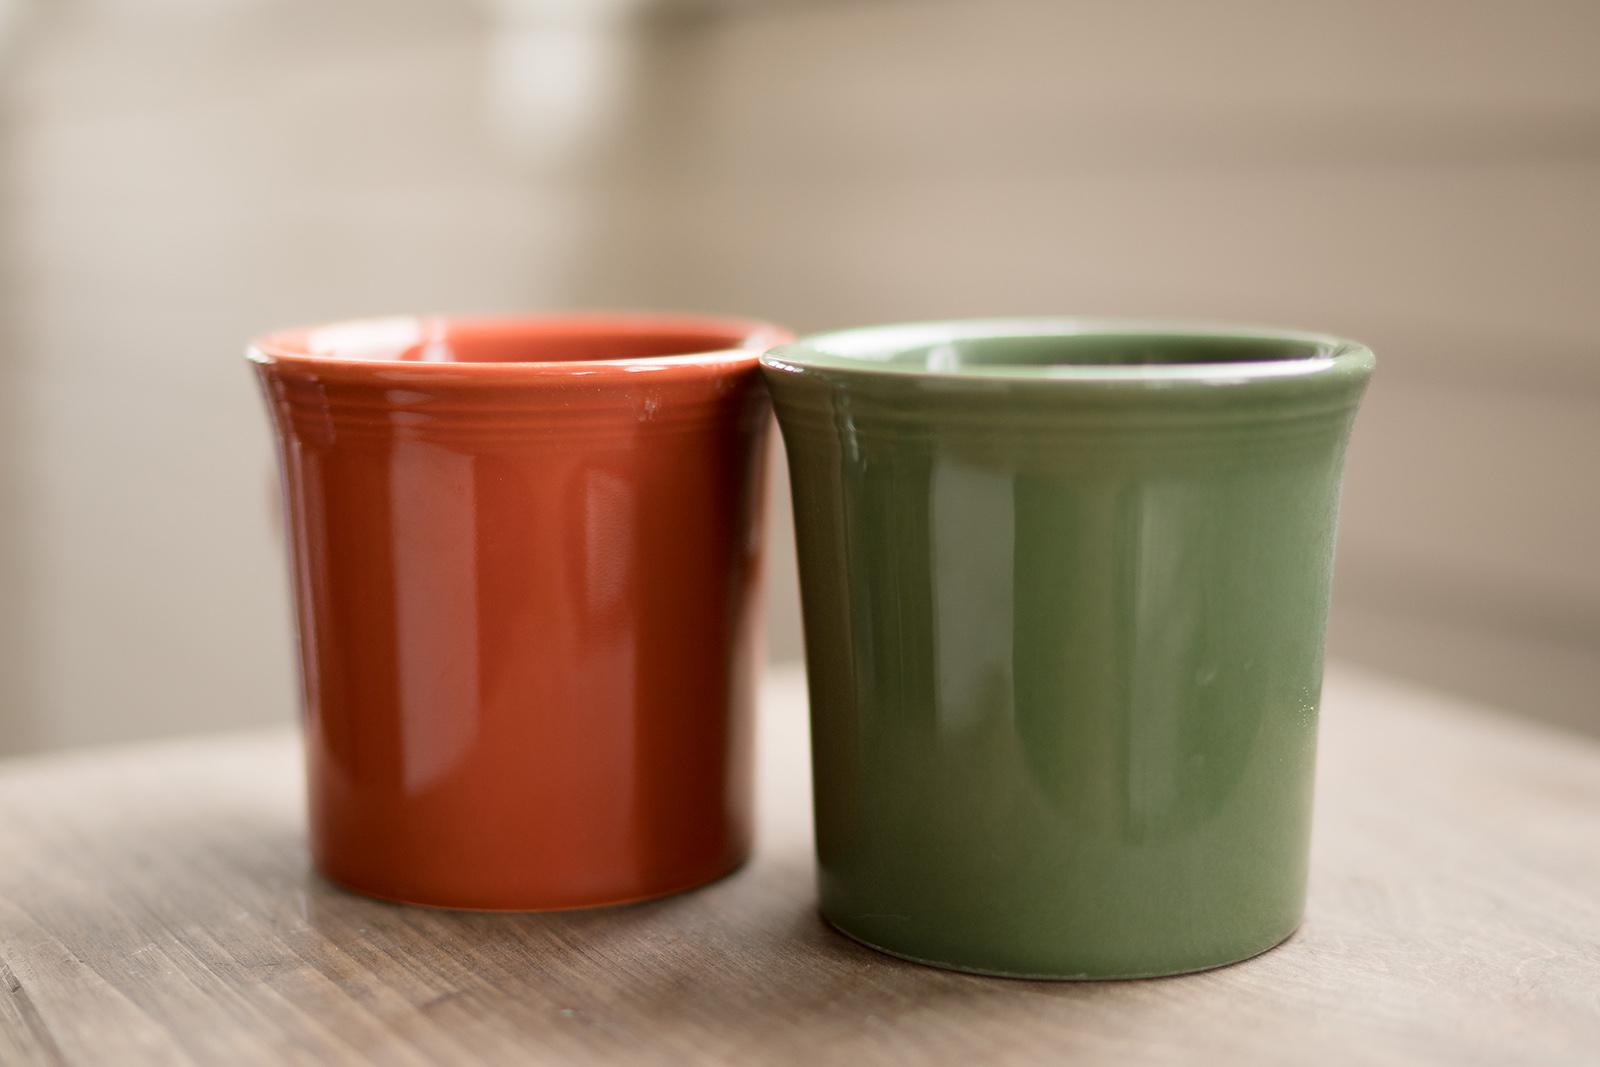 Fiesta-ware mugs by Caroline Jensen